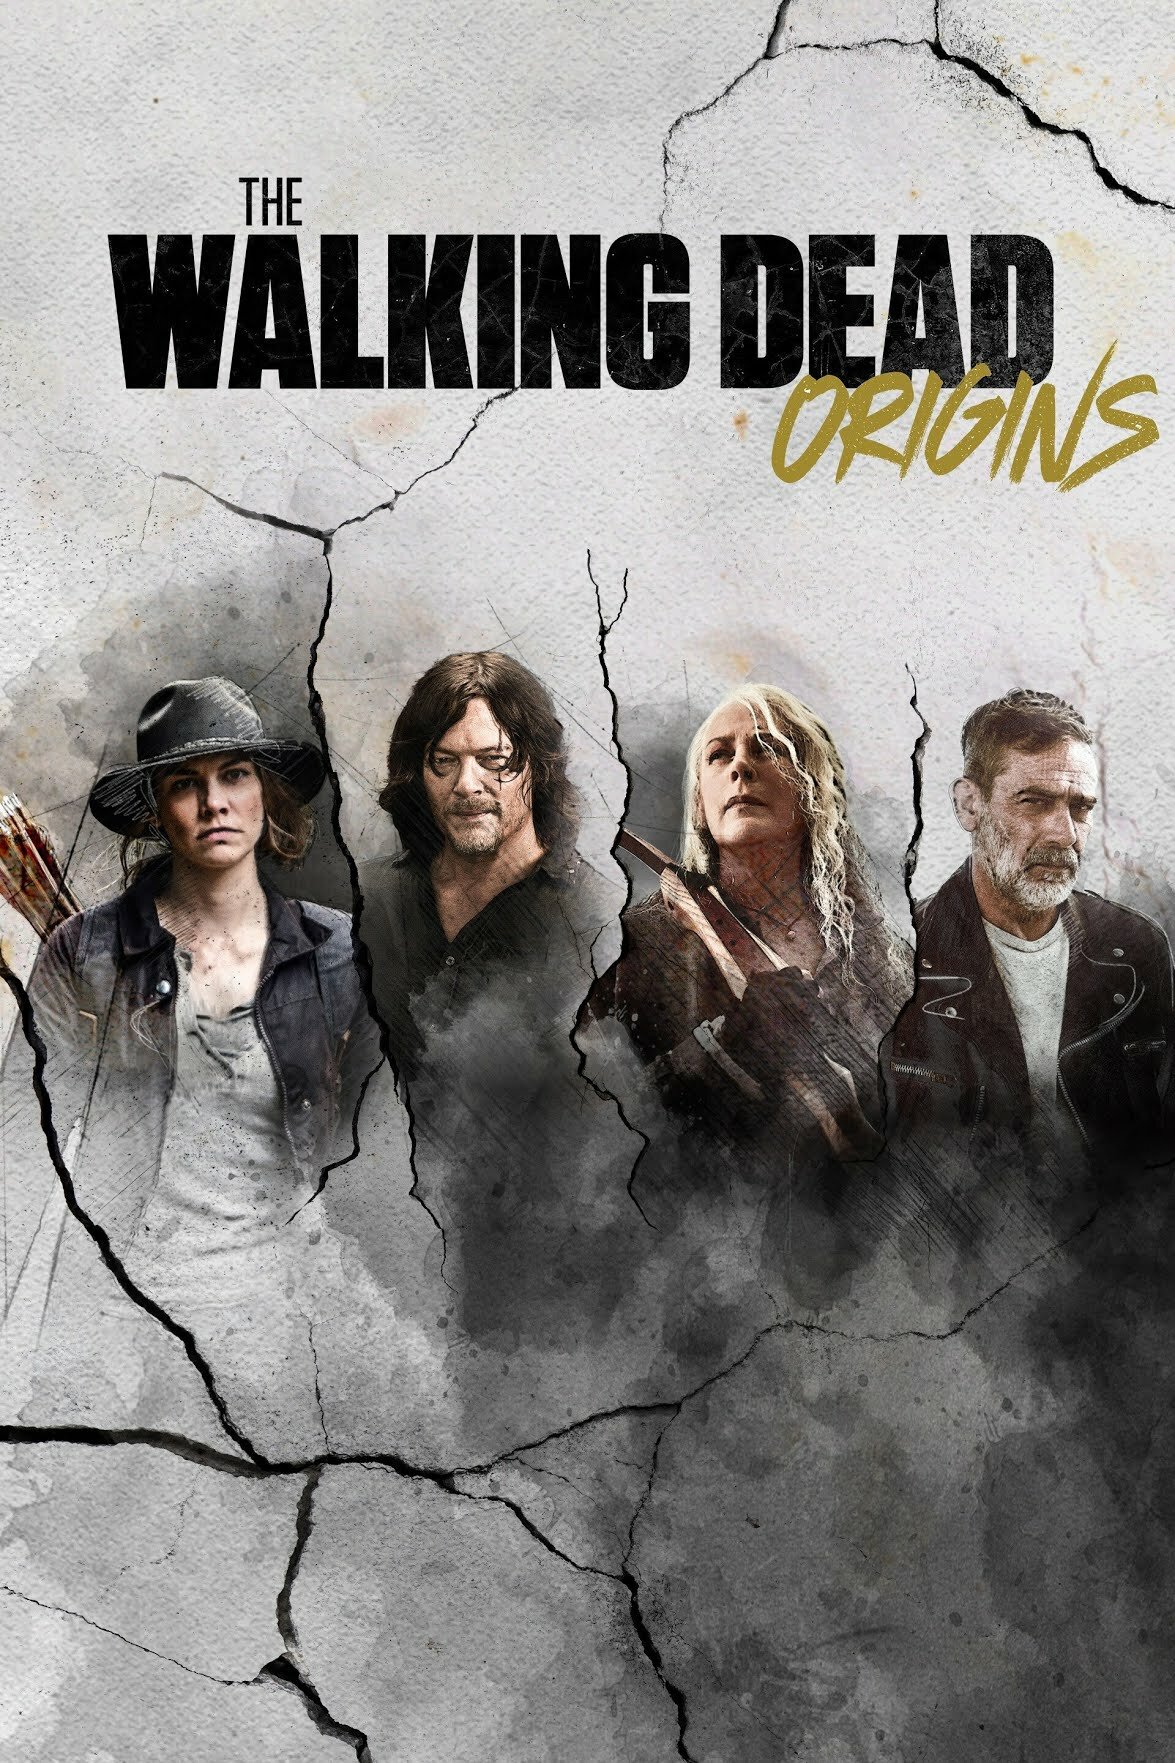 The Walking Dead: Origins ne zaman